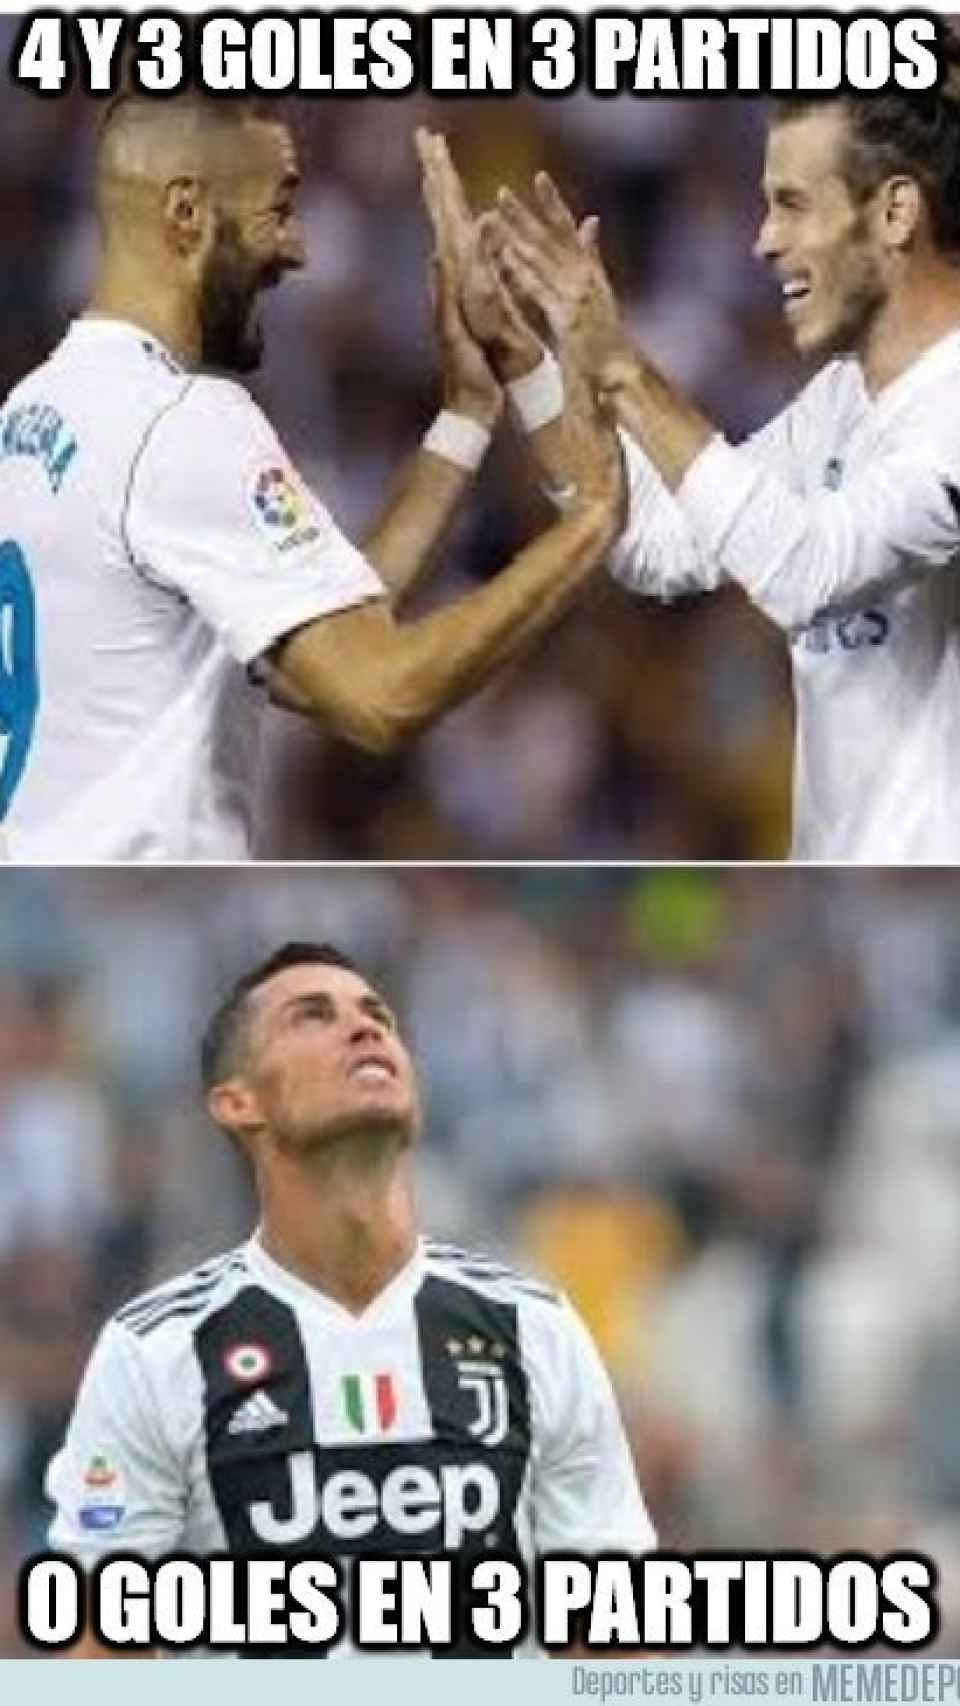 Los mejores memes del Real Madrid - Leganés